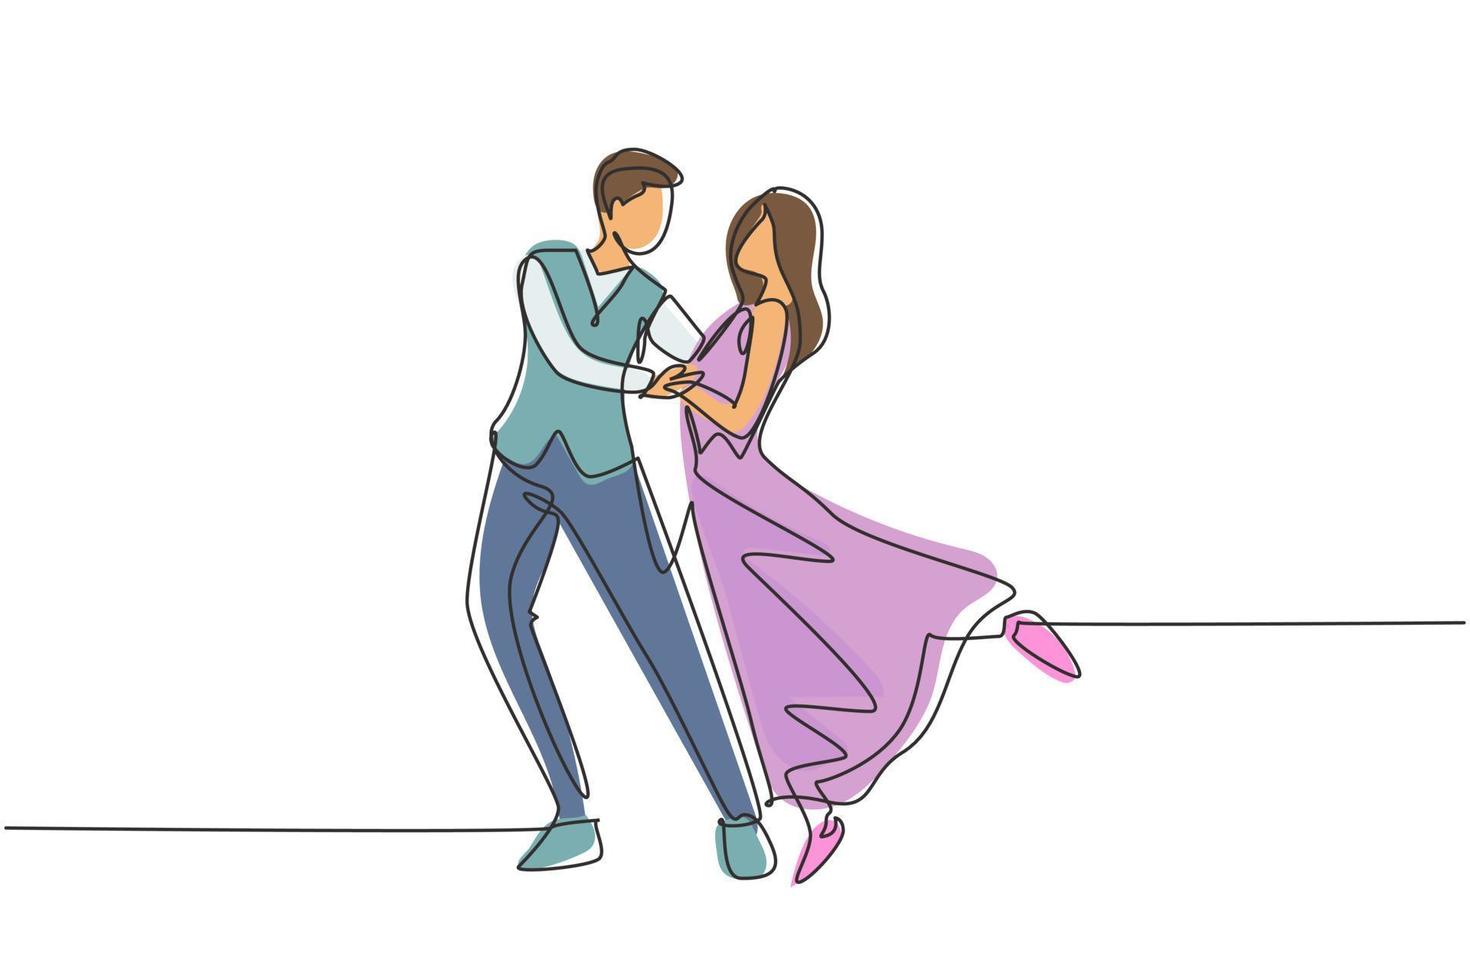 enkele doorlopende lijntekening romantische man en vrouw professionele danser paar tango dansen, wals dansen op danswedstrijd dansvloer. dynamische één lijn trekken grafisch ontwerp vectorillustratie vector